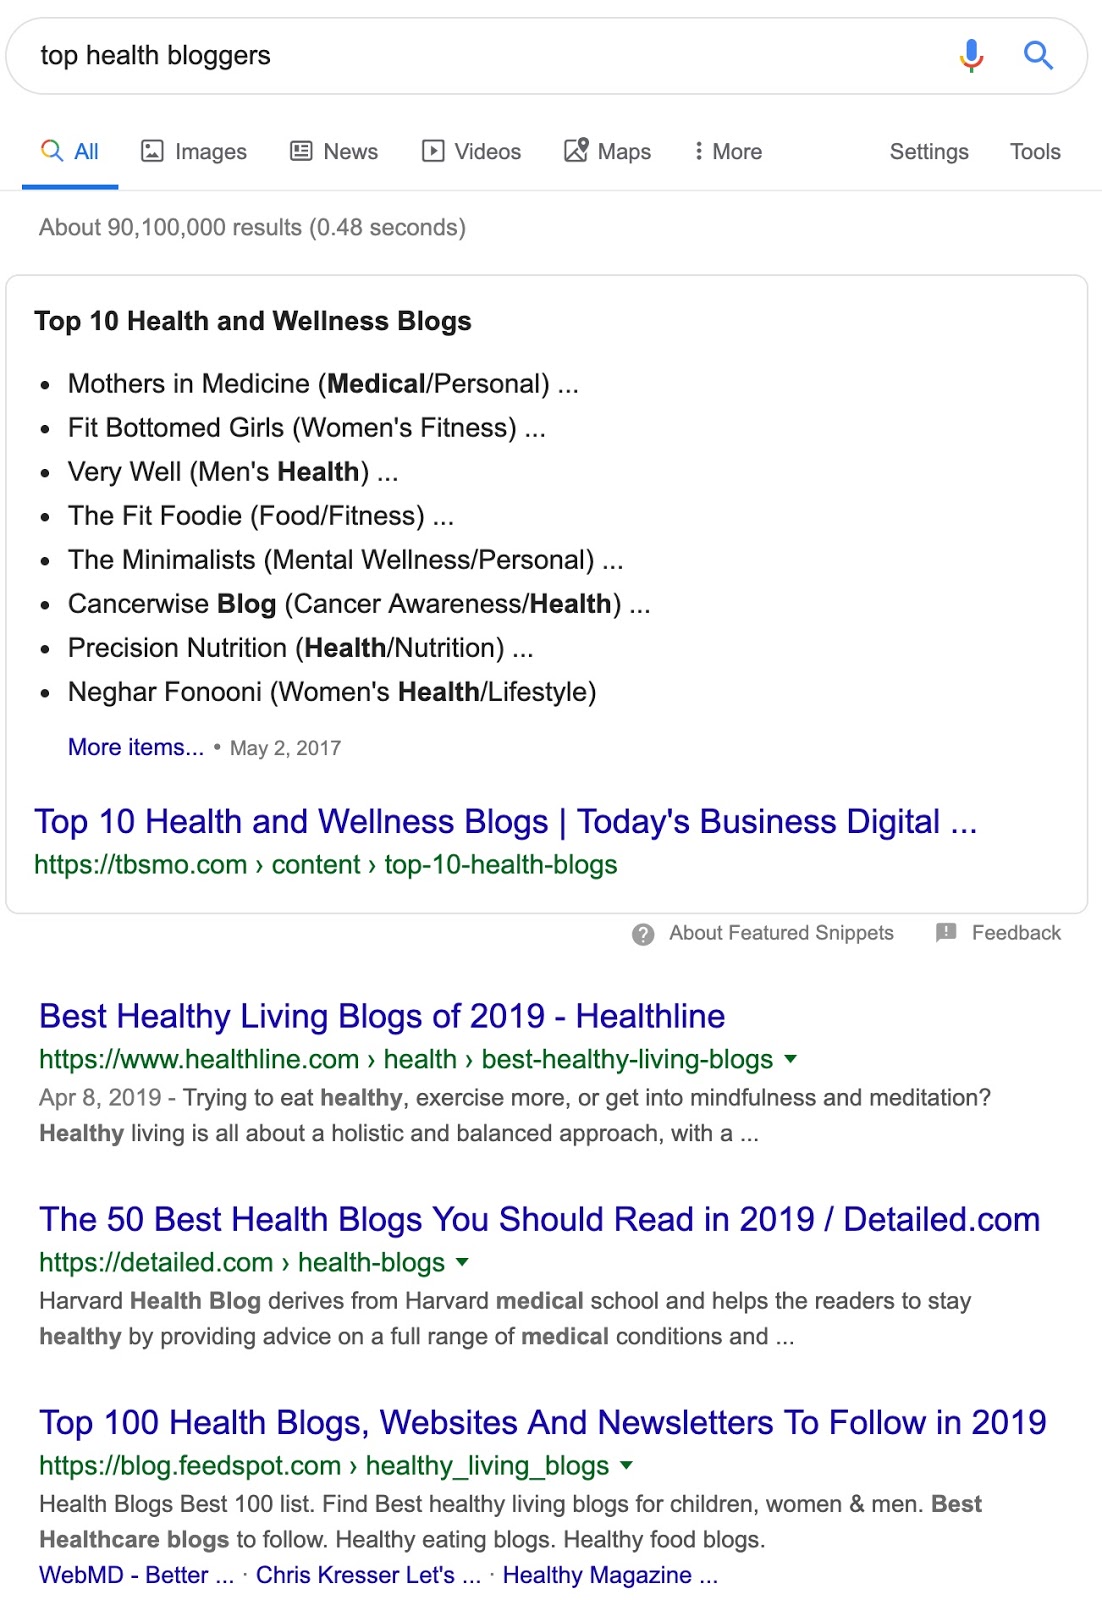 meilleurs blogueurs sur la santé Google Search "srcset =" https://ahrefs.com/blog/wp-content/uploads/2019/10/top_health_bloggers_-_Google_Search.jpg 1102w, https://ahrefs.com/blog/wp-content/ uploads / 2019/10 / top_health_bloggers _-_ Google_Search-768x1115.jpg 768w, https://ahrefs.com/blog/wp-content/uploads/2019/10/top_health_bloggers_-_Google_Search-293x425.jpg 293w "tailles =" (max- largeur: 1102px) 100vw, 1102px